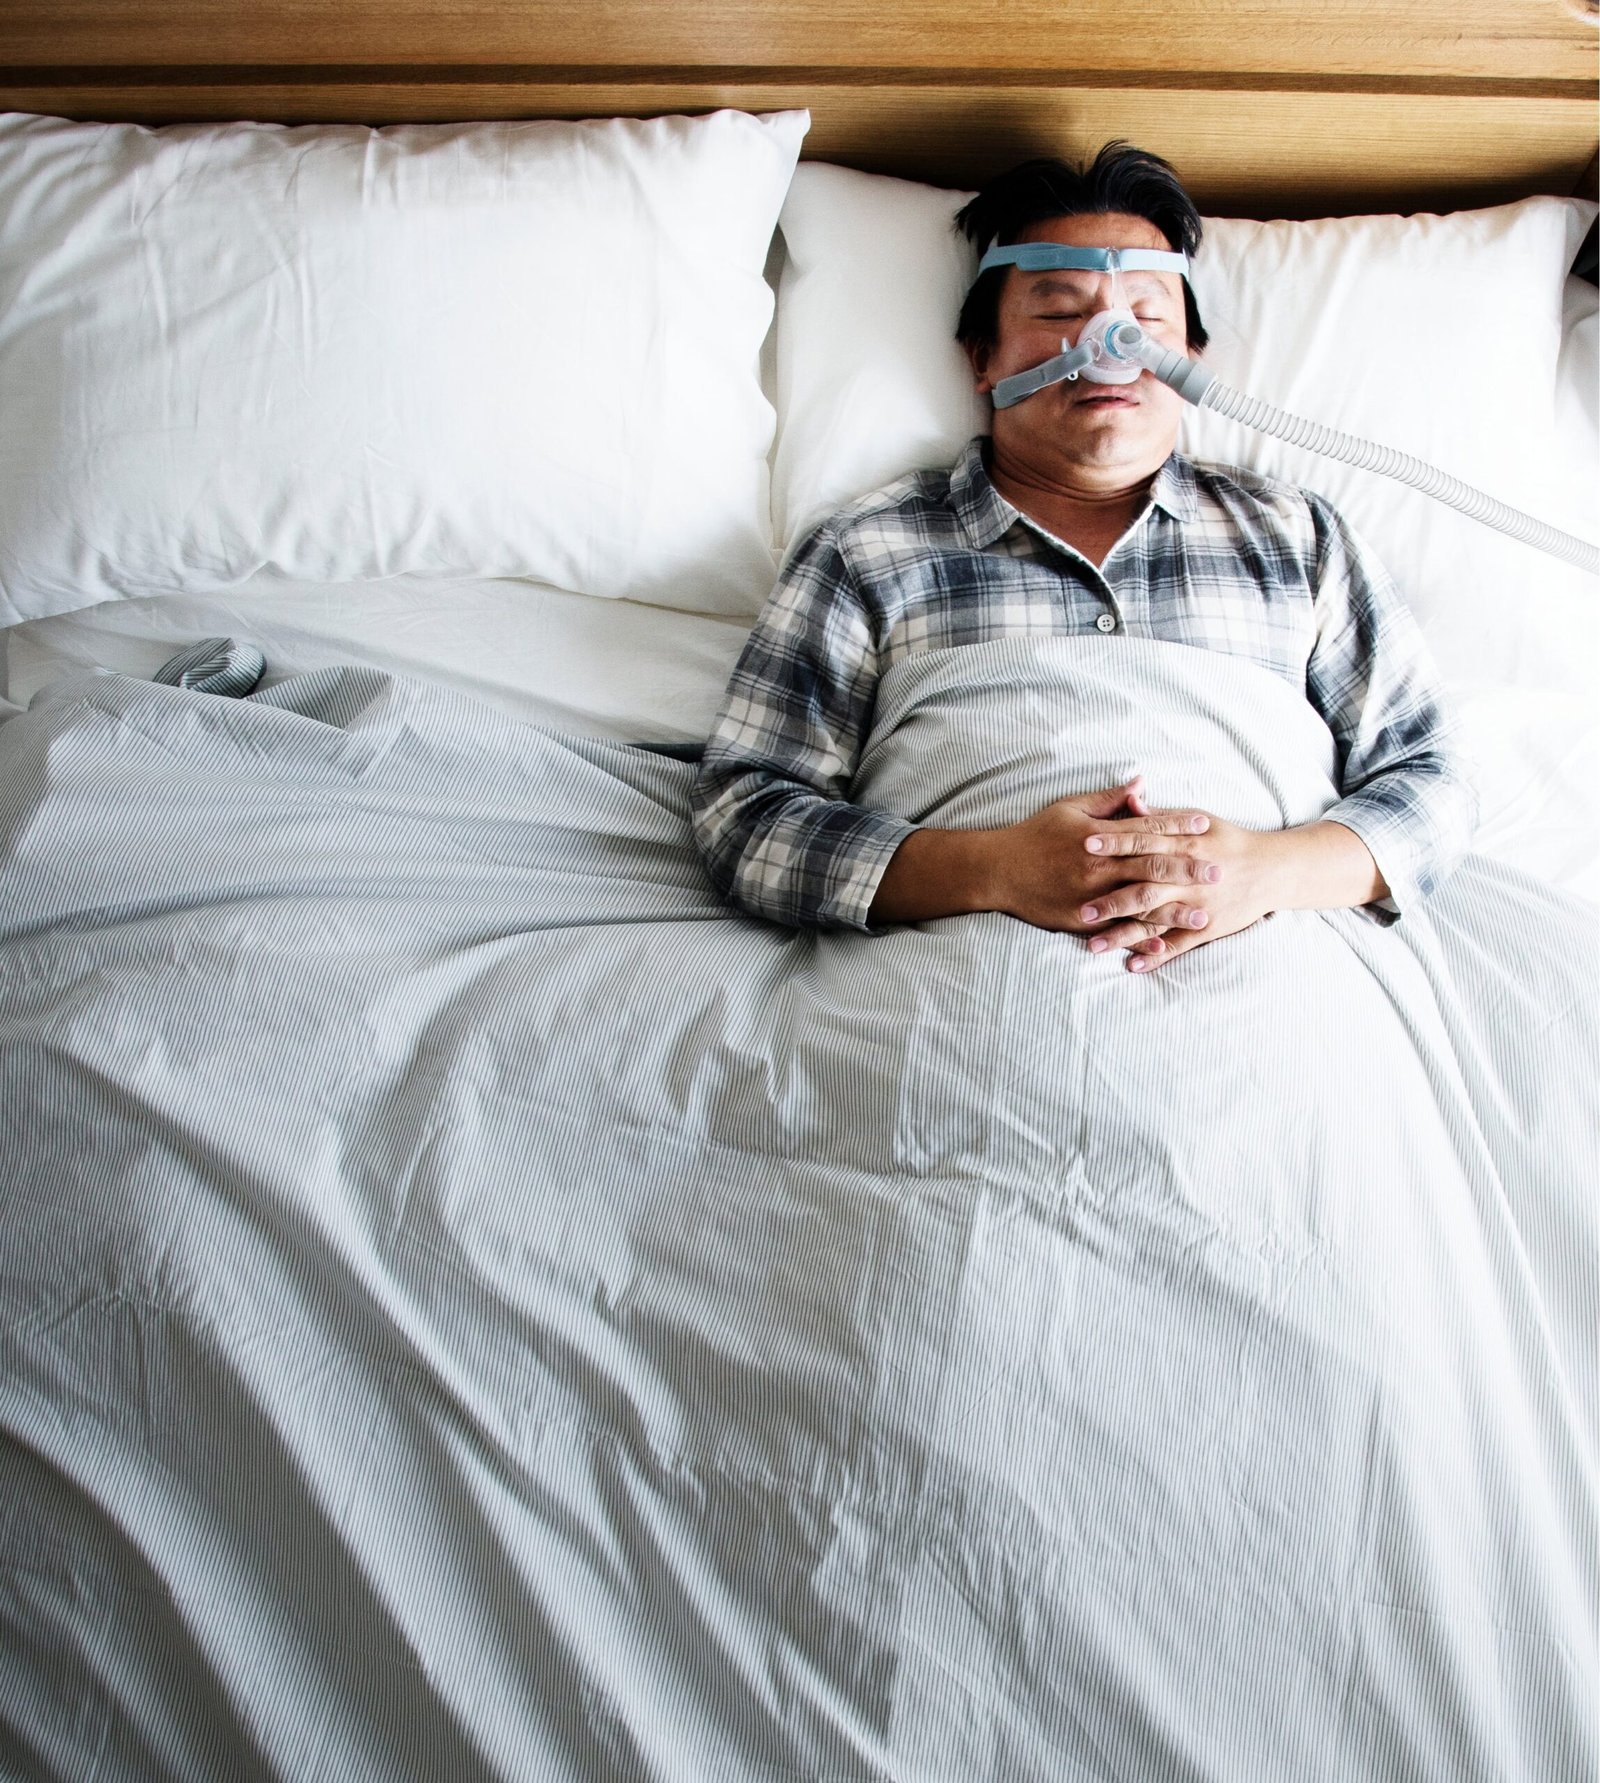 Apneia do sono tem tratamento; conheça as alternativas